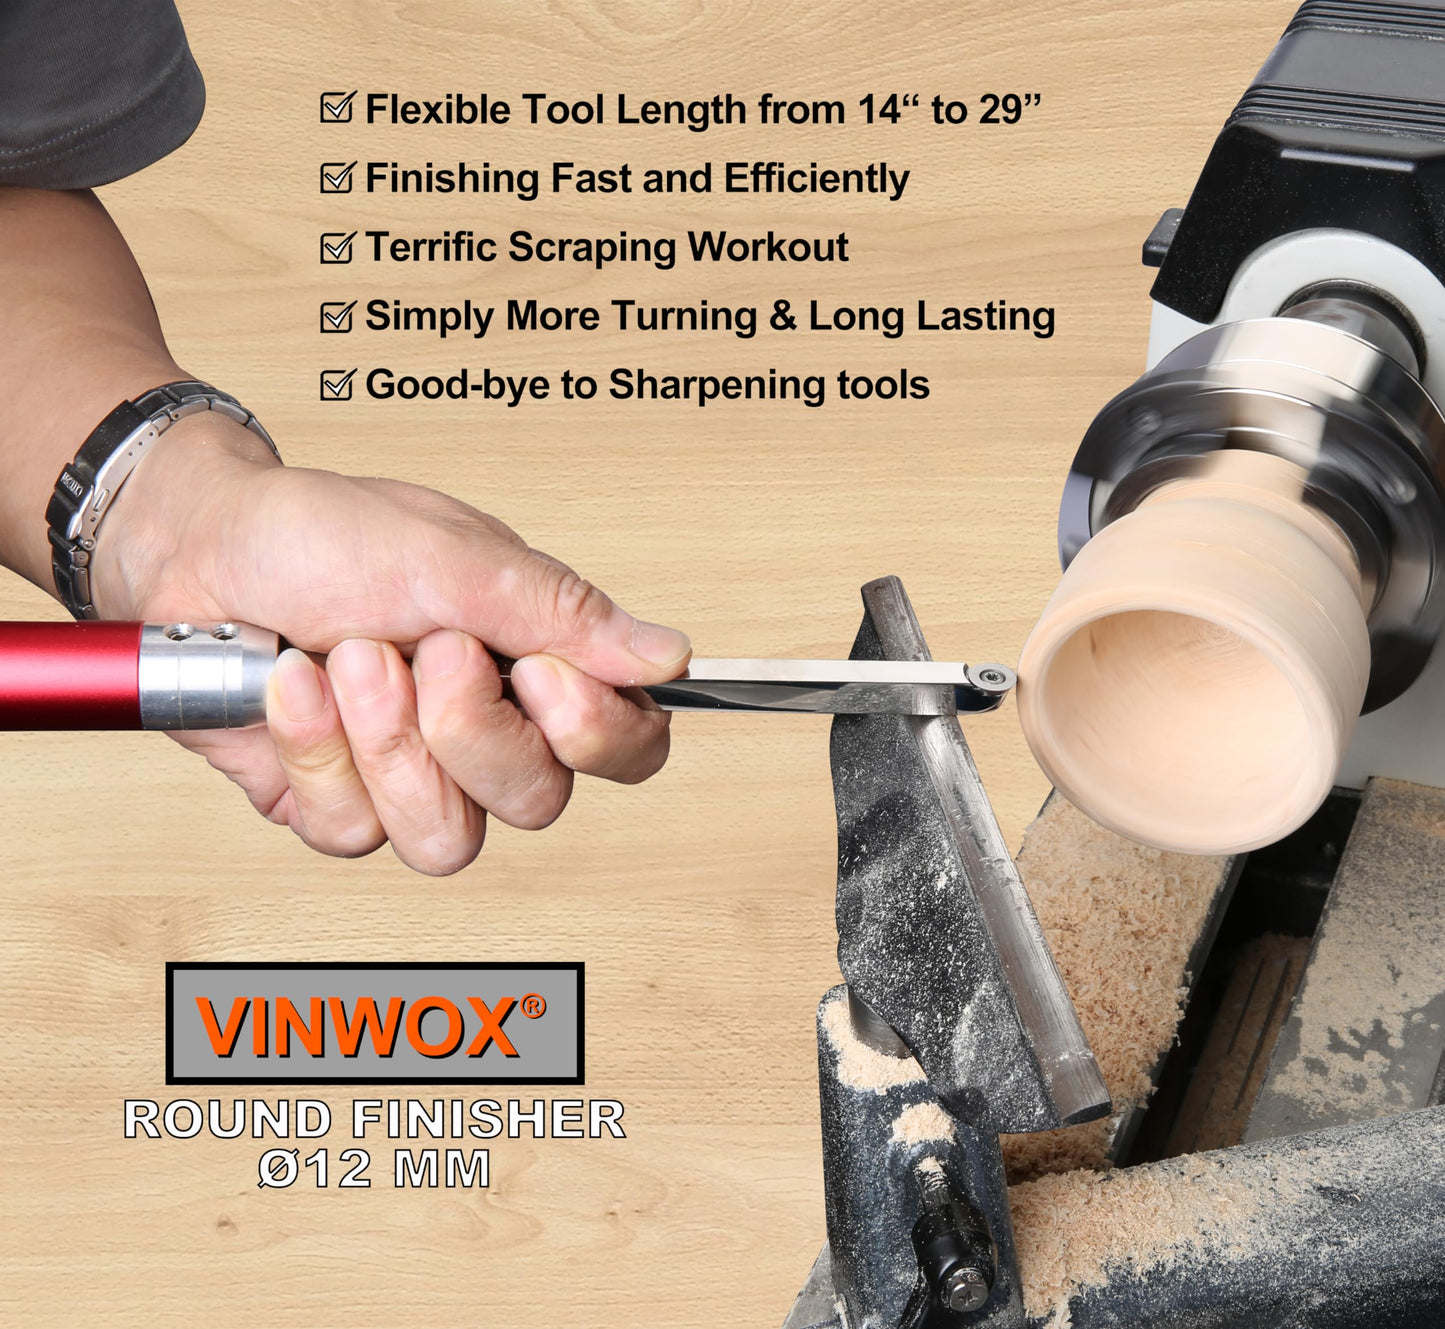 VINWOX 8 PCS Carbide Wood Lathe Turning Tool Set, Carbide Lathe Turning Tool, Including Swan Neck Hollower, Rougher, Finisher, Detailer, Pen Turning